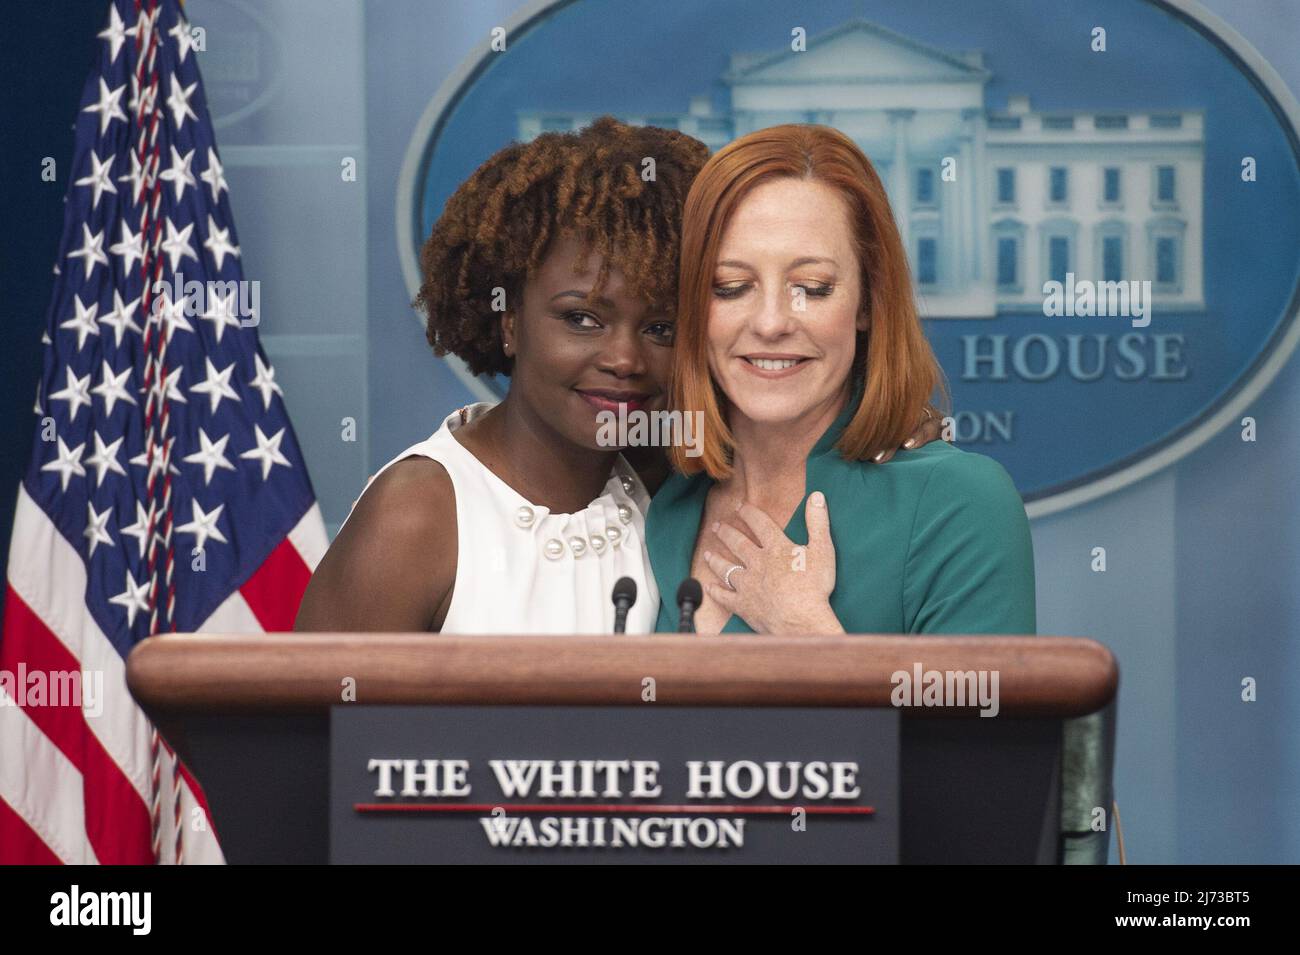 Der Pressesprecher Jen Psaki stellt die neue Pressesprecherin Karine Jean-Pierre als erste Black and Out LGBTQ-Person vor, die am Donnerstag, den 5. Mai 2022, im Briefing Room des Weißen Hauses in Washington, DC, die Position innehat. Foto von Bonnie Cash/UPI Stockfoto